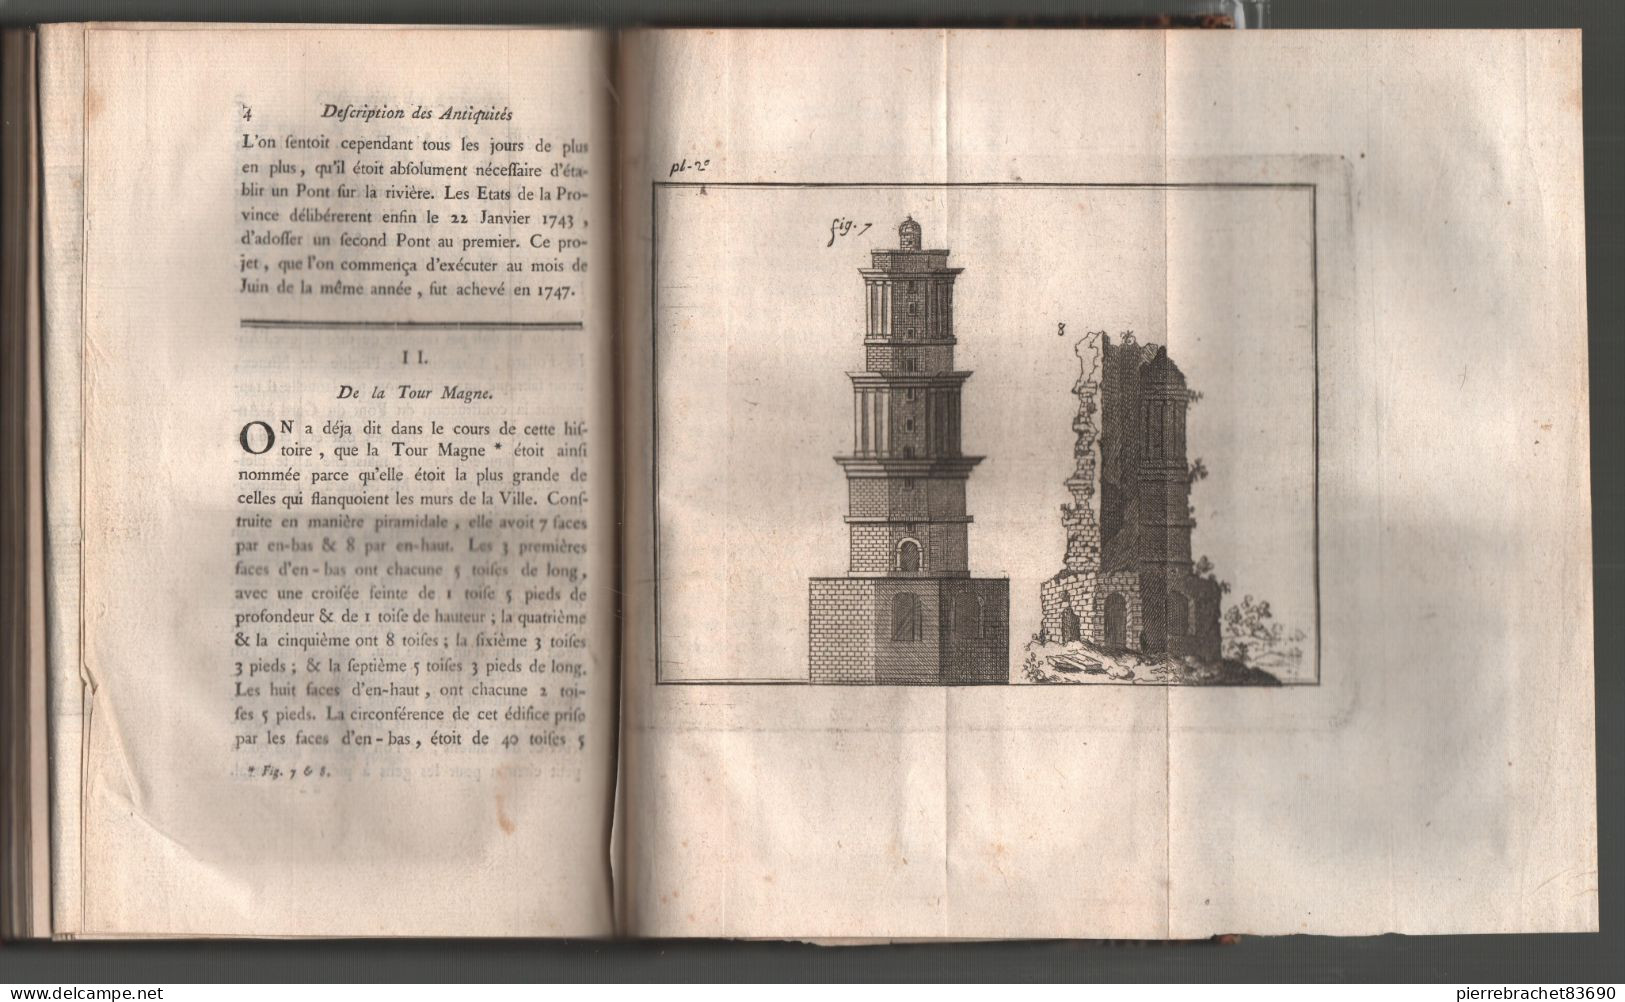 Maucomble. Histoire Abrégée De La Ville De Nîmes Avec La Description De Ses Antiquités. 1767 - Ohne Zuordnung